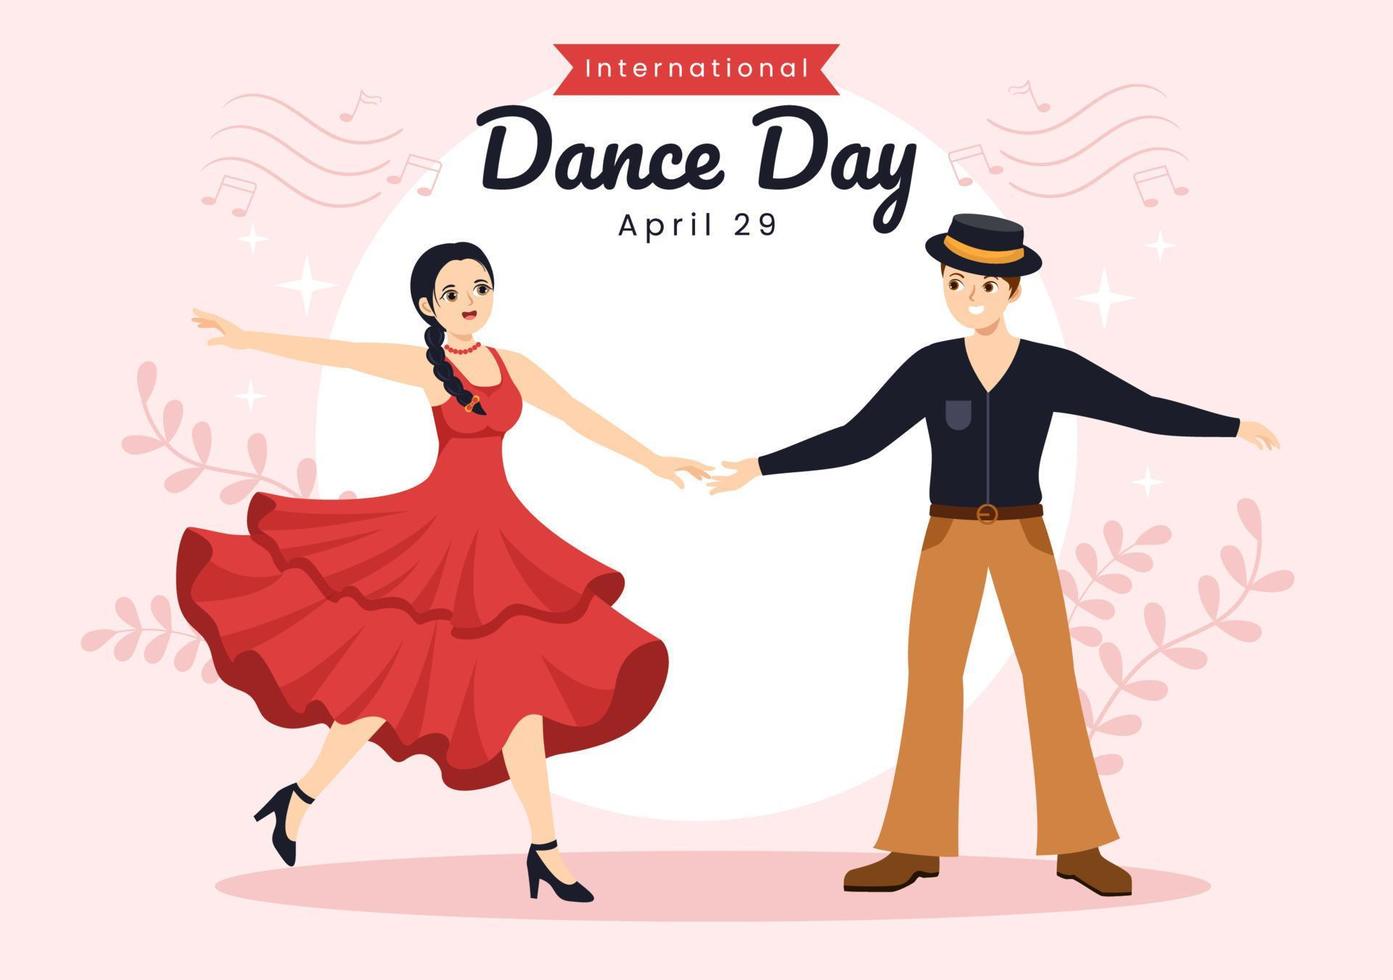 internationale tanztagesillustration mit professionellem tanzpaar oder single in flacher karikaturhand gezeichnet für landingpage-vorlagen vektor